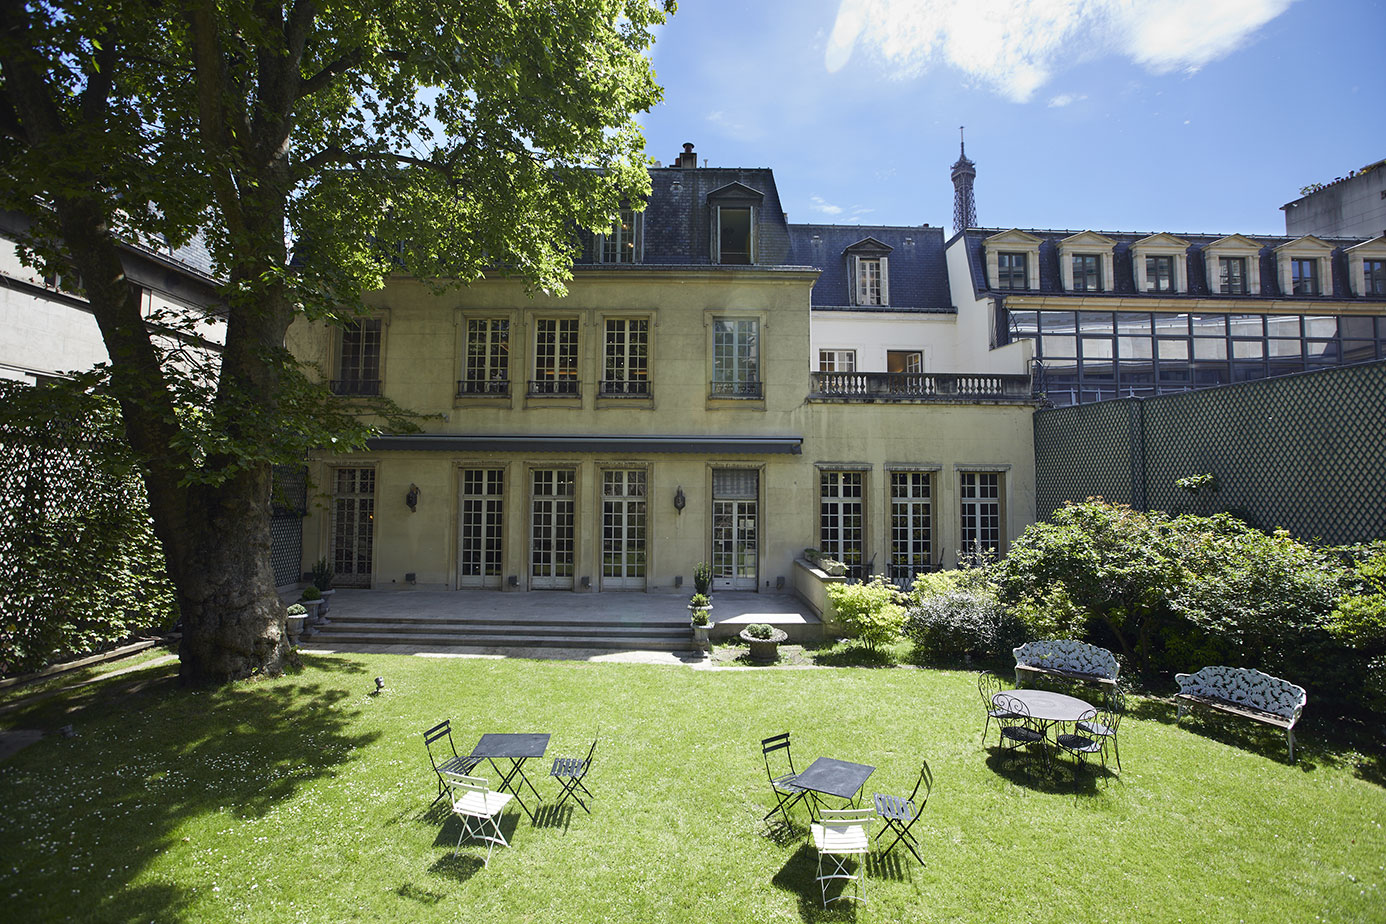 Hotel particulier, SUMMER HOUSE Paris. PLUMEVOYAGE @plumevoyagemagazine © DR